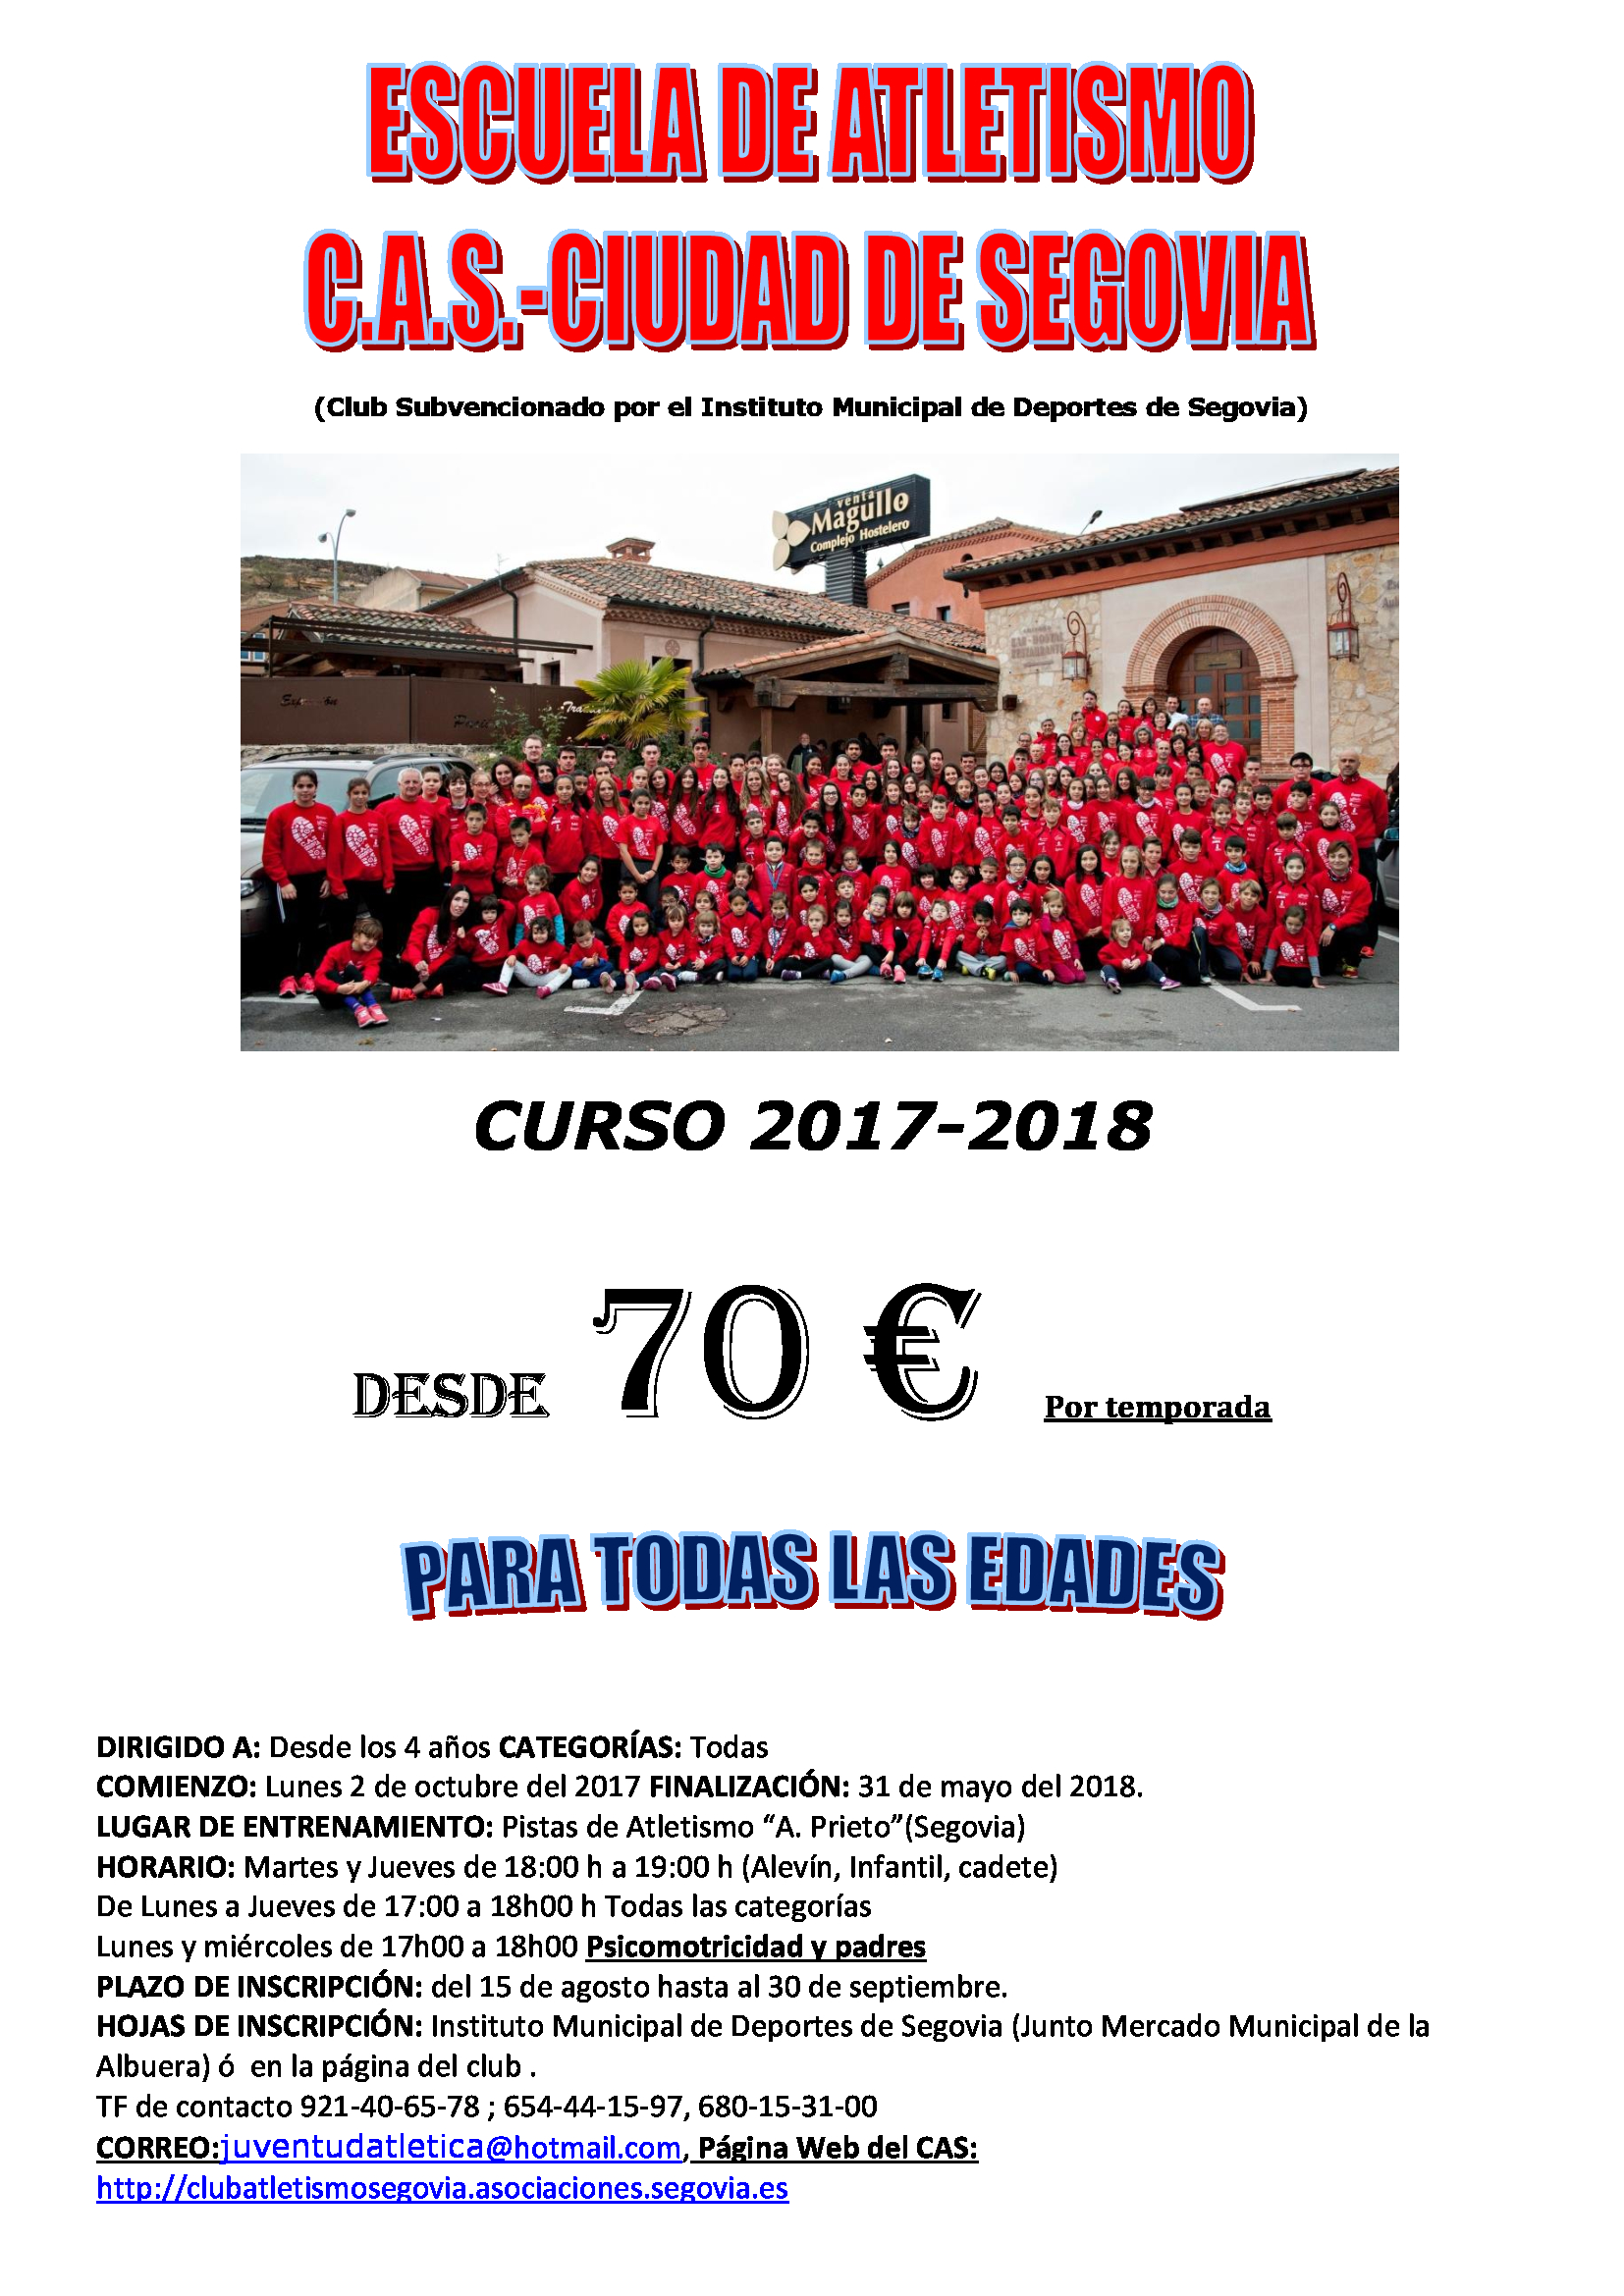 Club de Atletismo Segovia: Inicio de la Temporada 2017/18